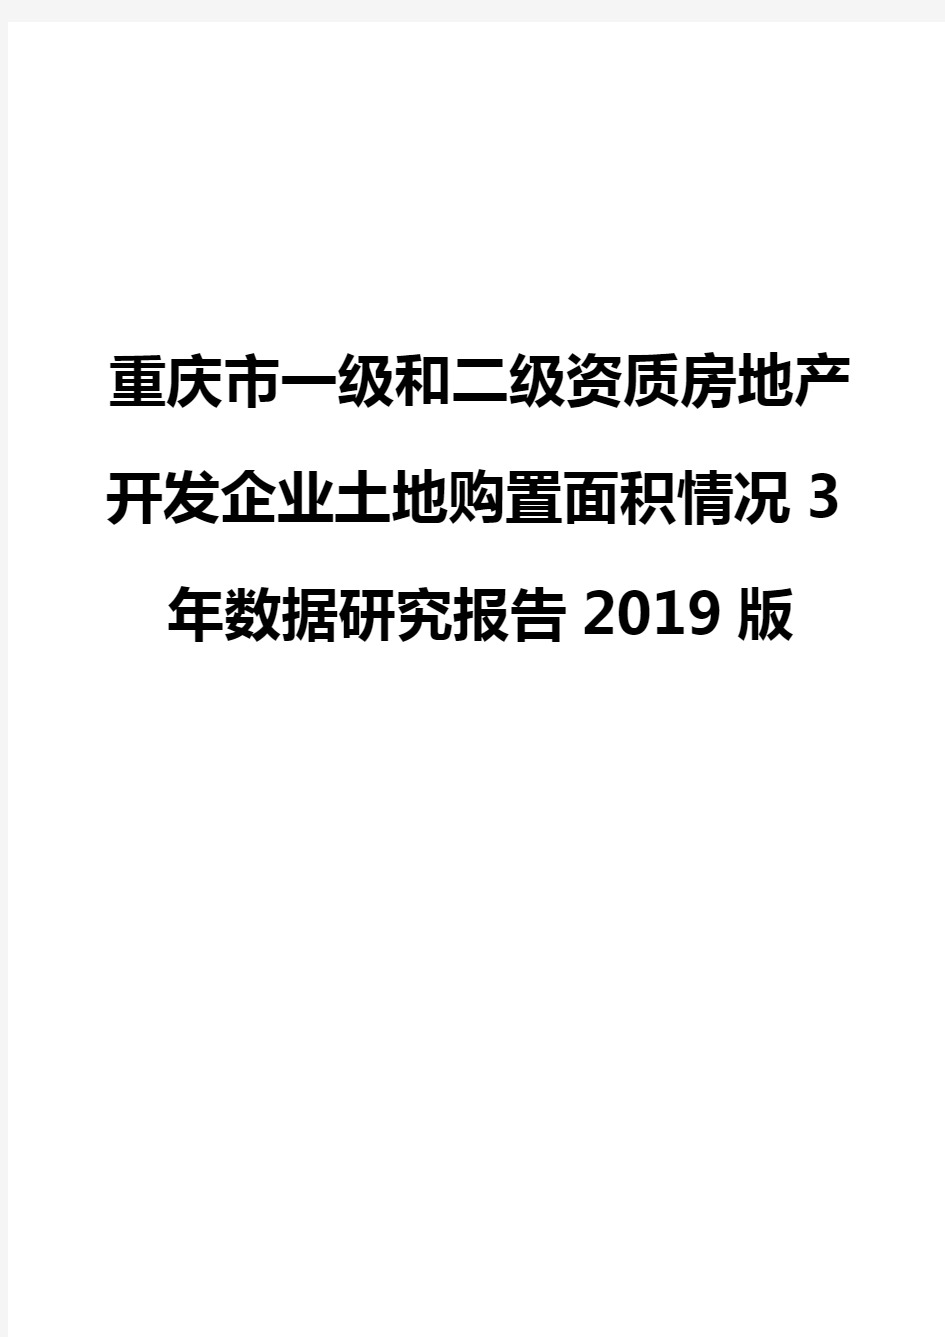 重庆市一级和二级资质房地产开发企业土地购置面积情况3年数据研究报告2019版